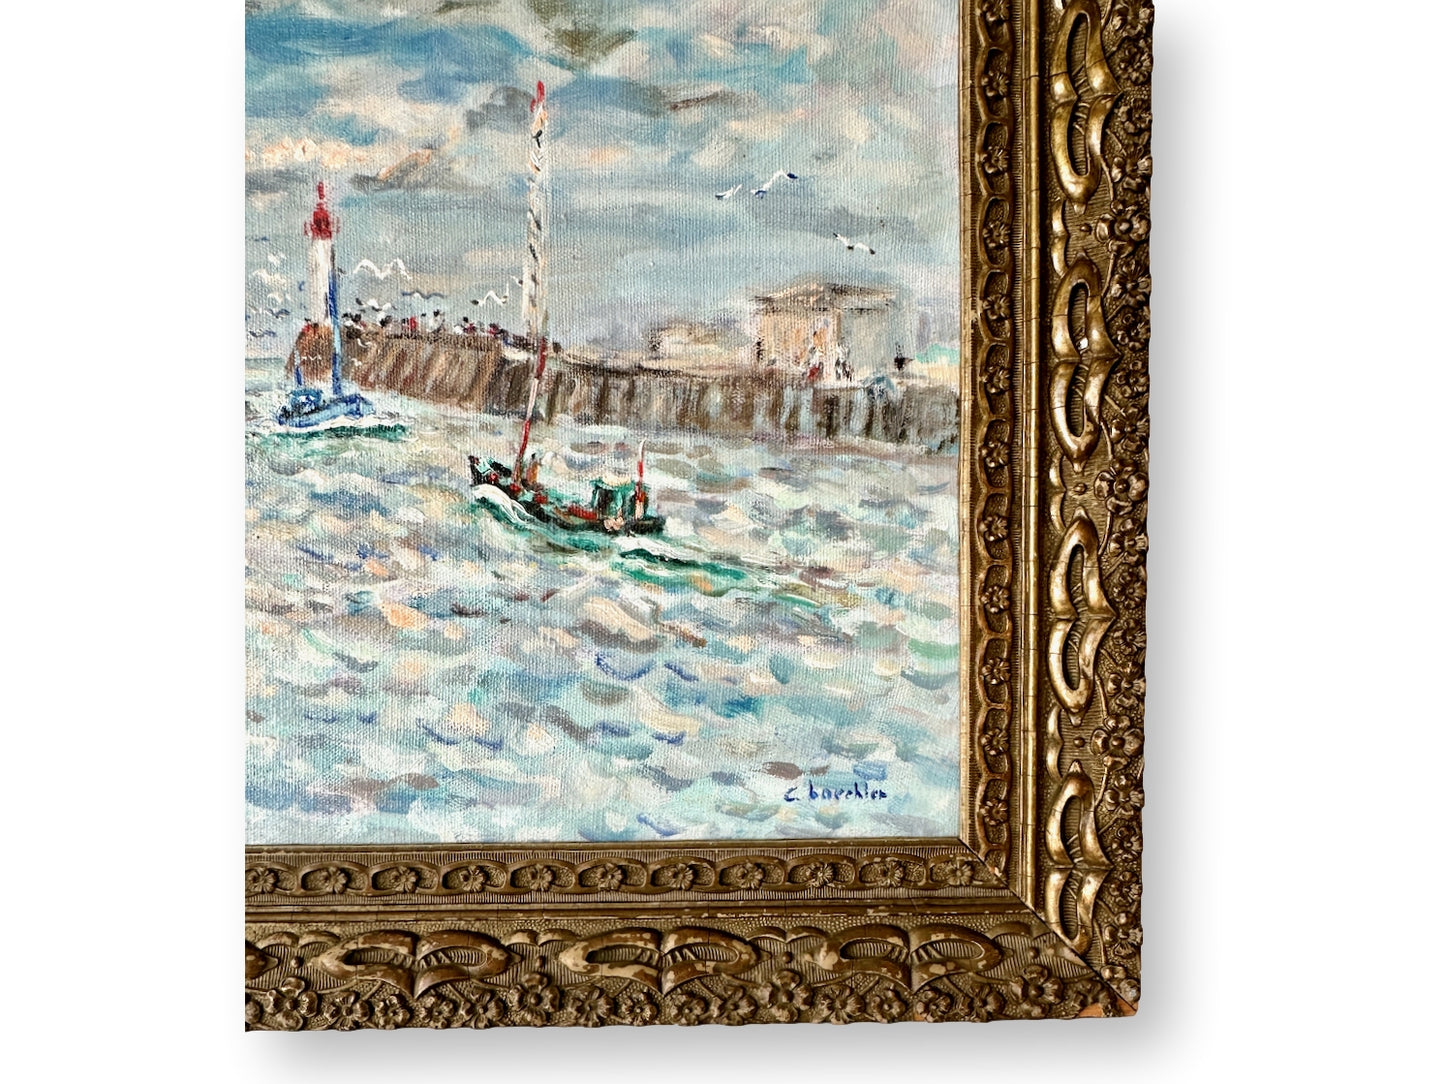 Midcentury French Coastal Harbor Impressionist Style Painting